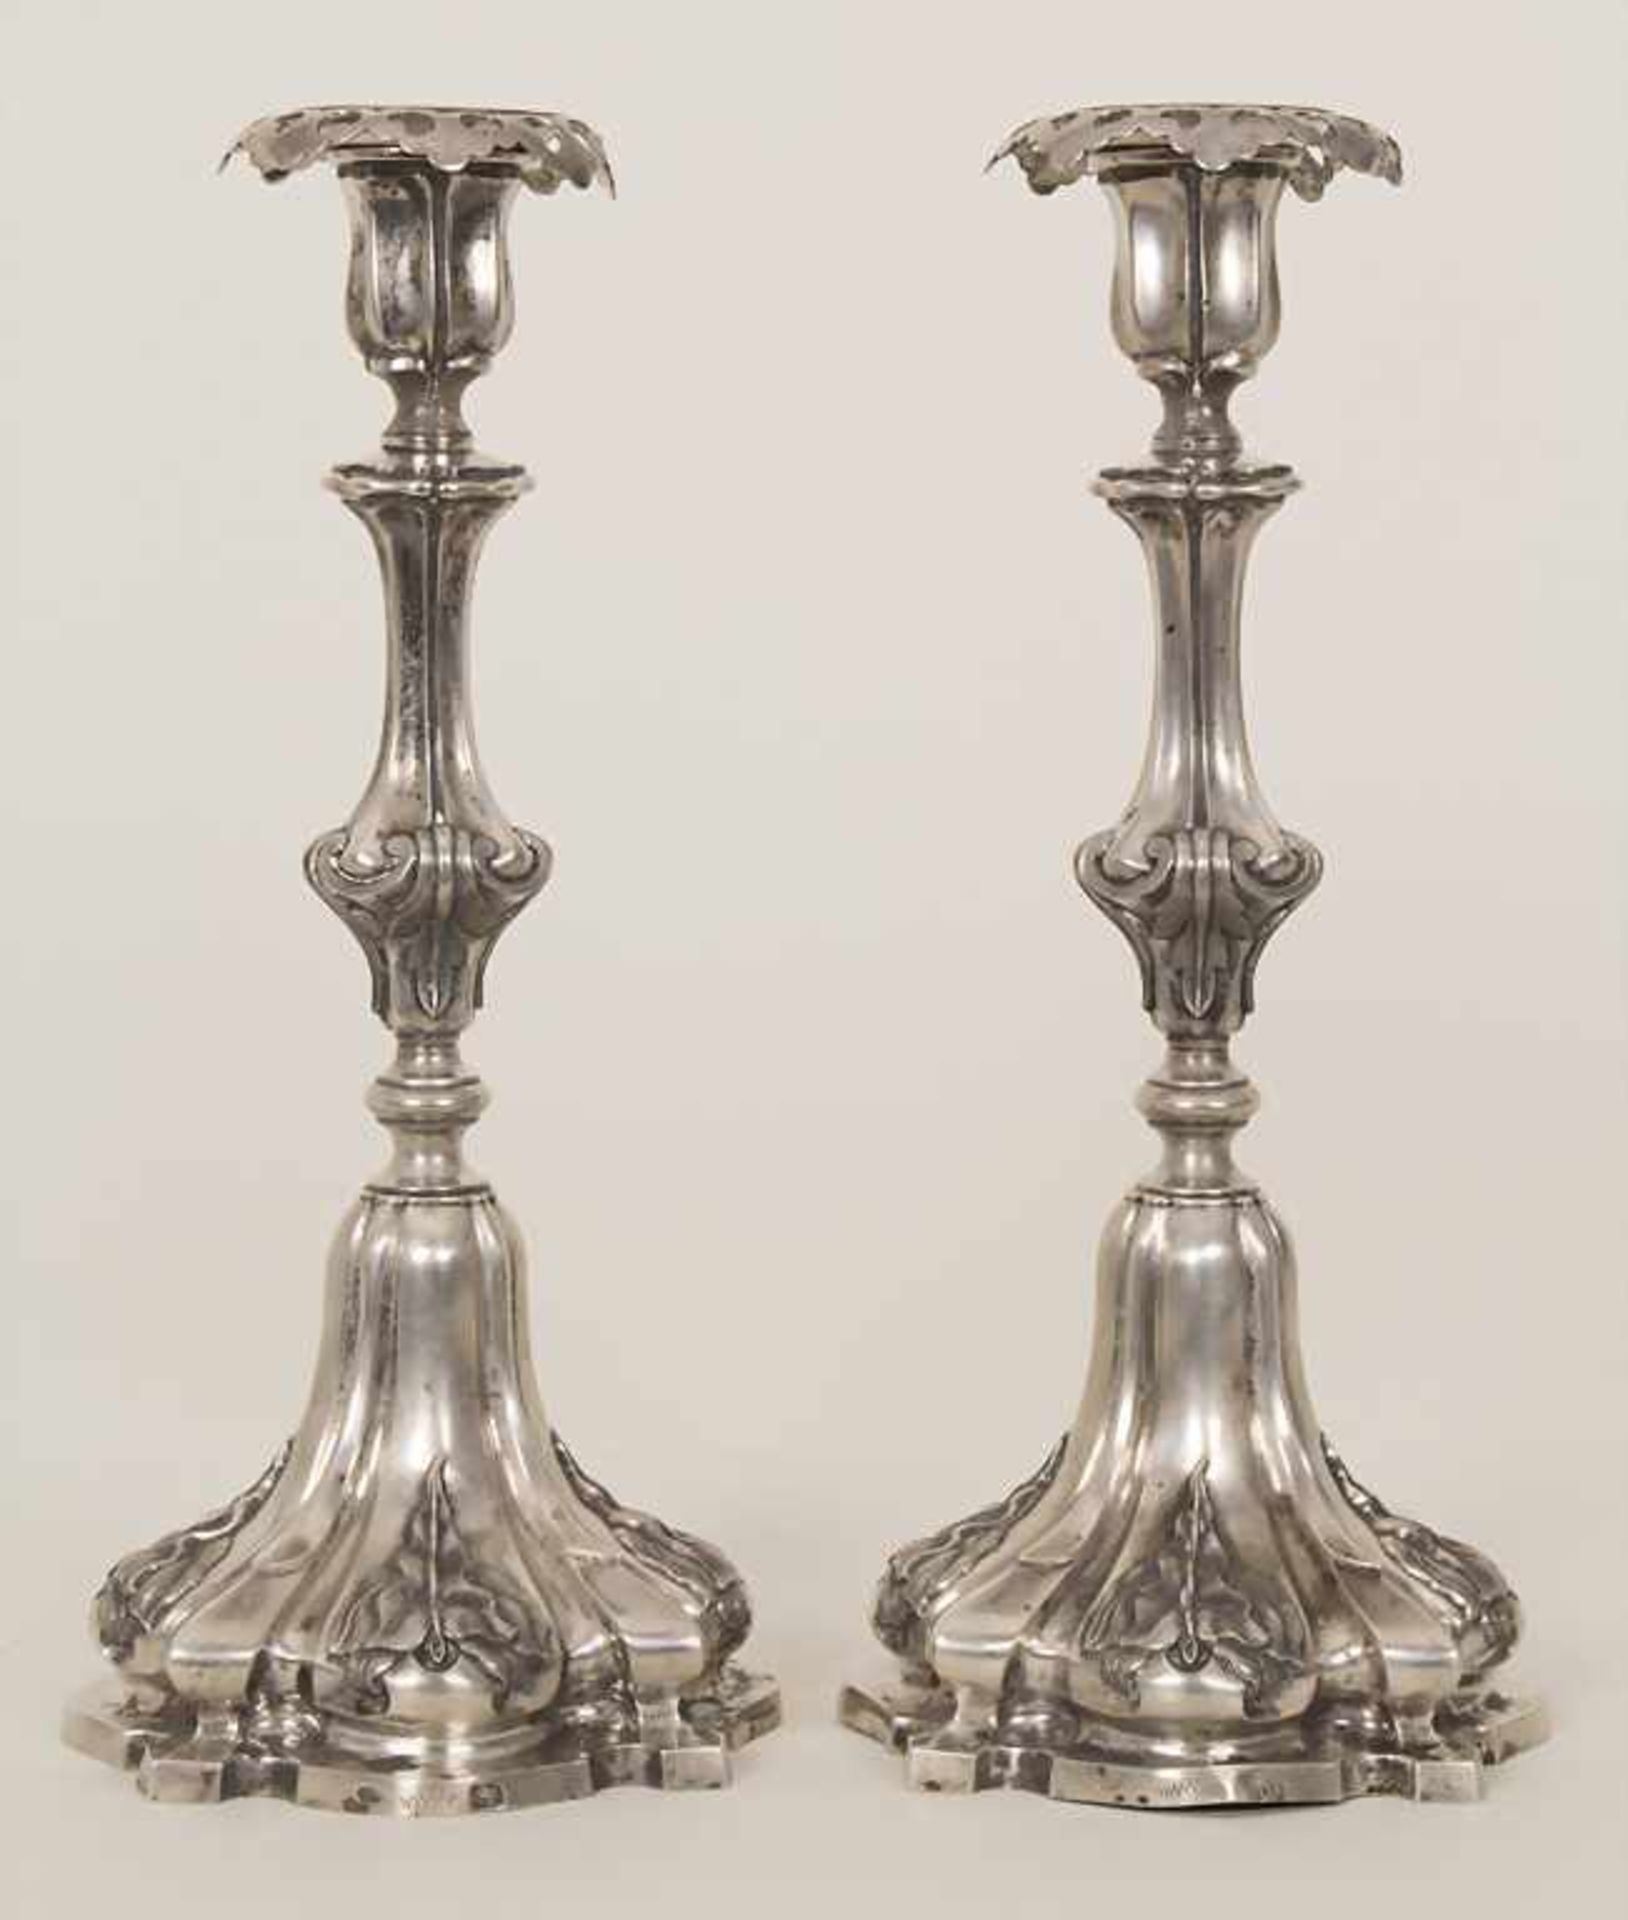 Paar Barock Kerzenleuchter / A pair of Baroque silver candlesticks, Porto, 19. Jh.Material: Silber, - Bild 2 aus 6